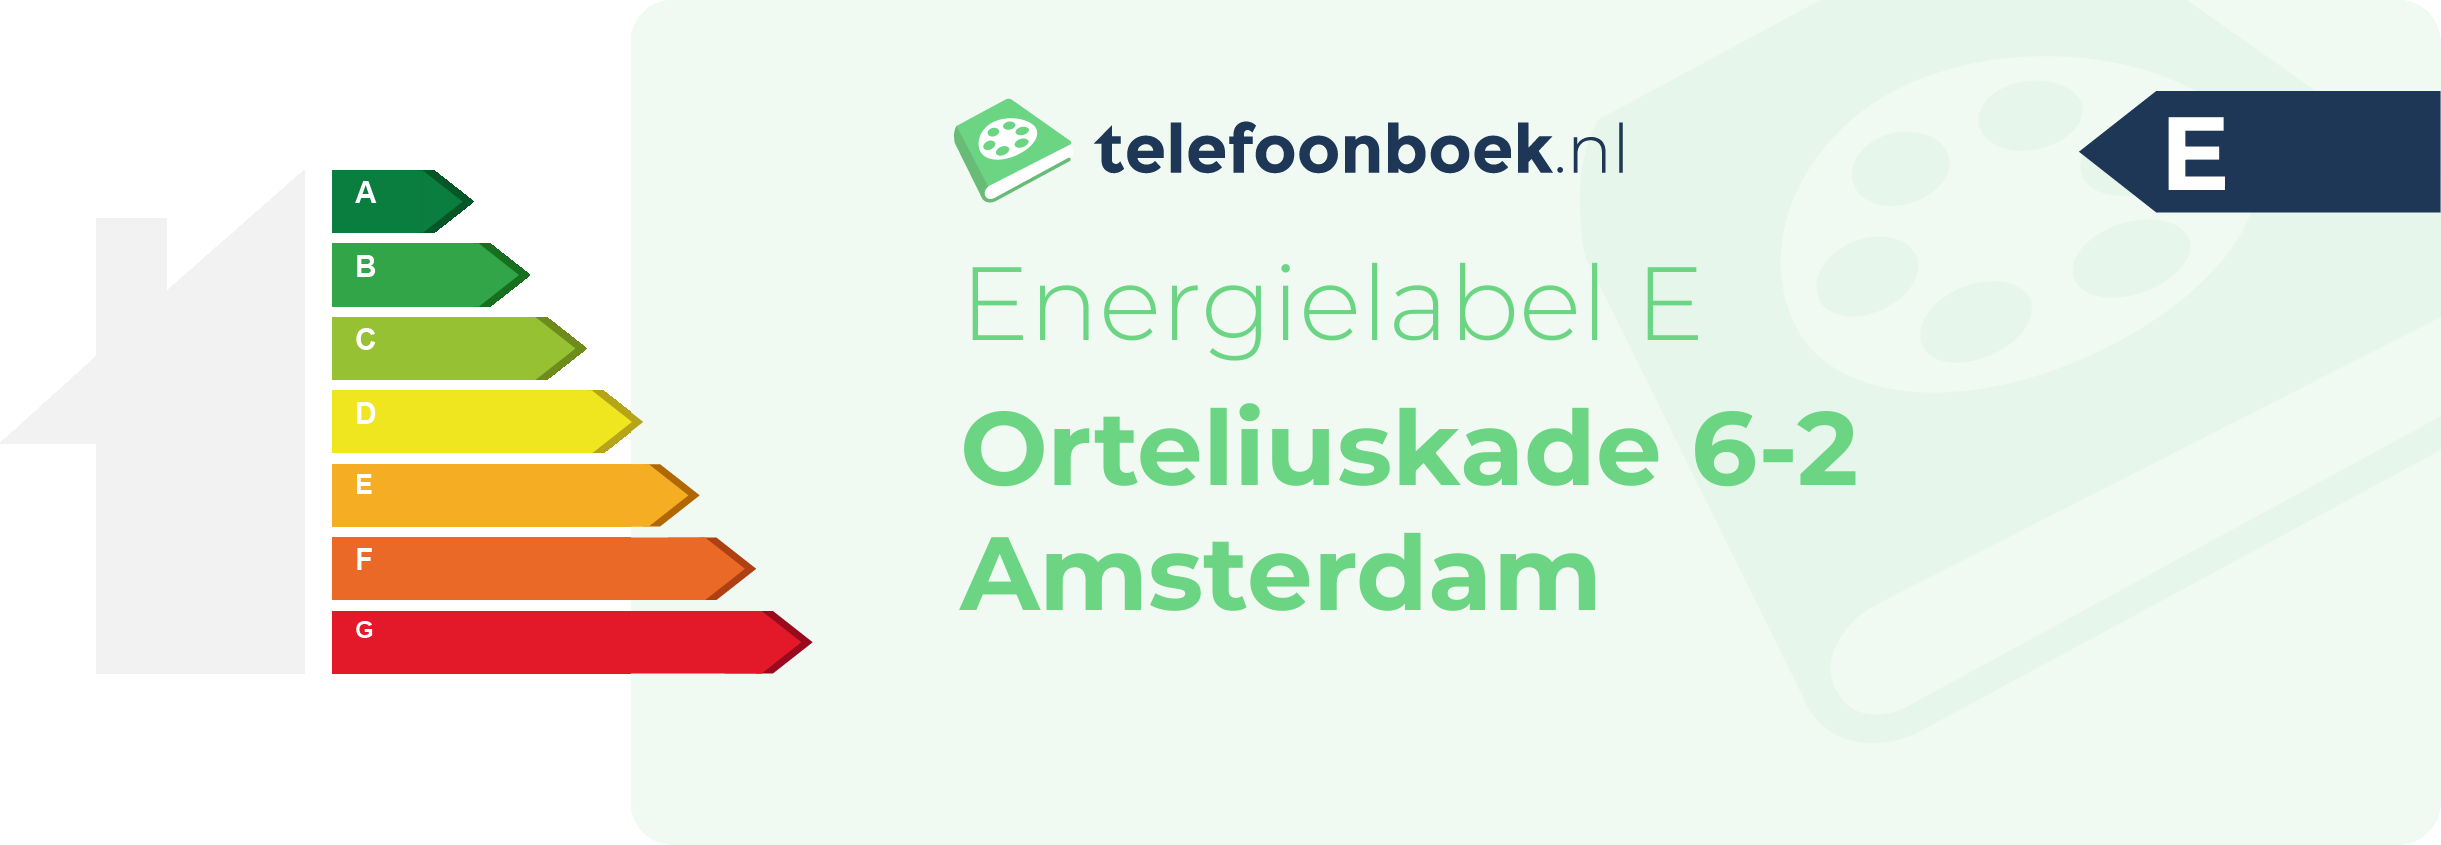 Energielabel Orteliuskade 6-2 Amsterdam